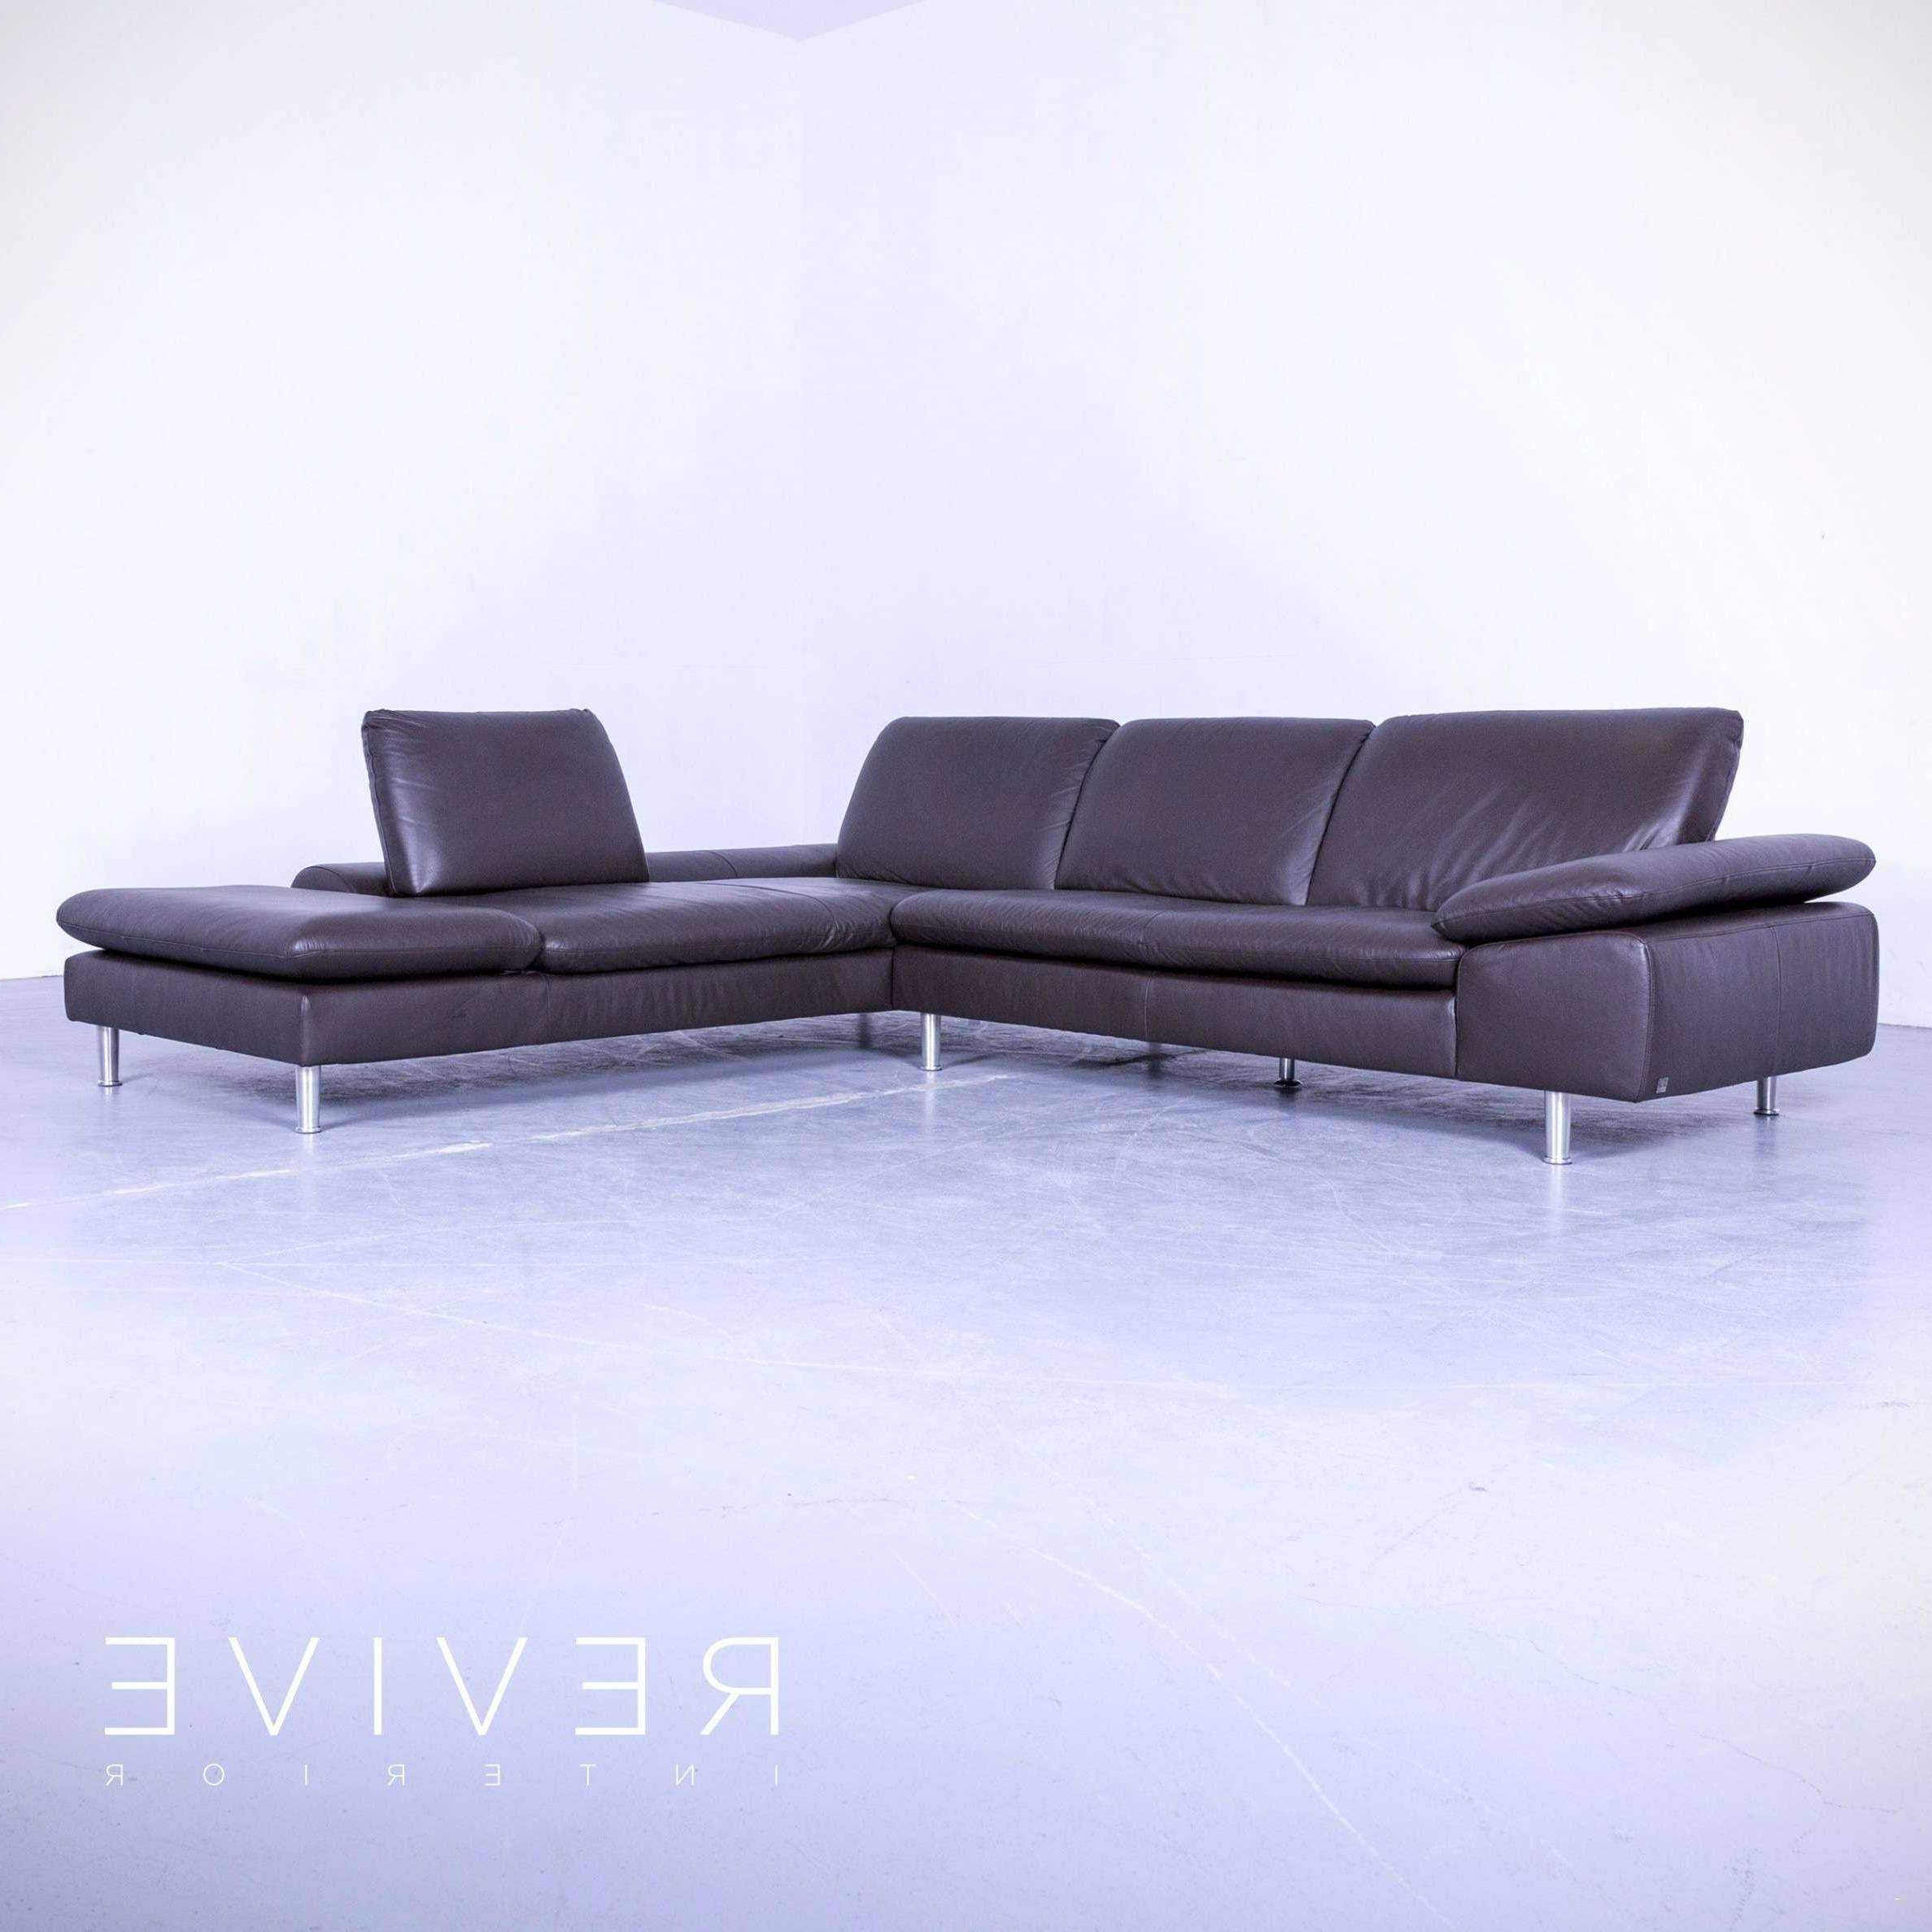 40 luxus von sofa grau leder planen xgg6ketf of couch billig kaufen